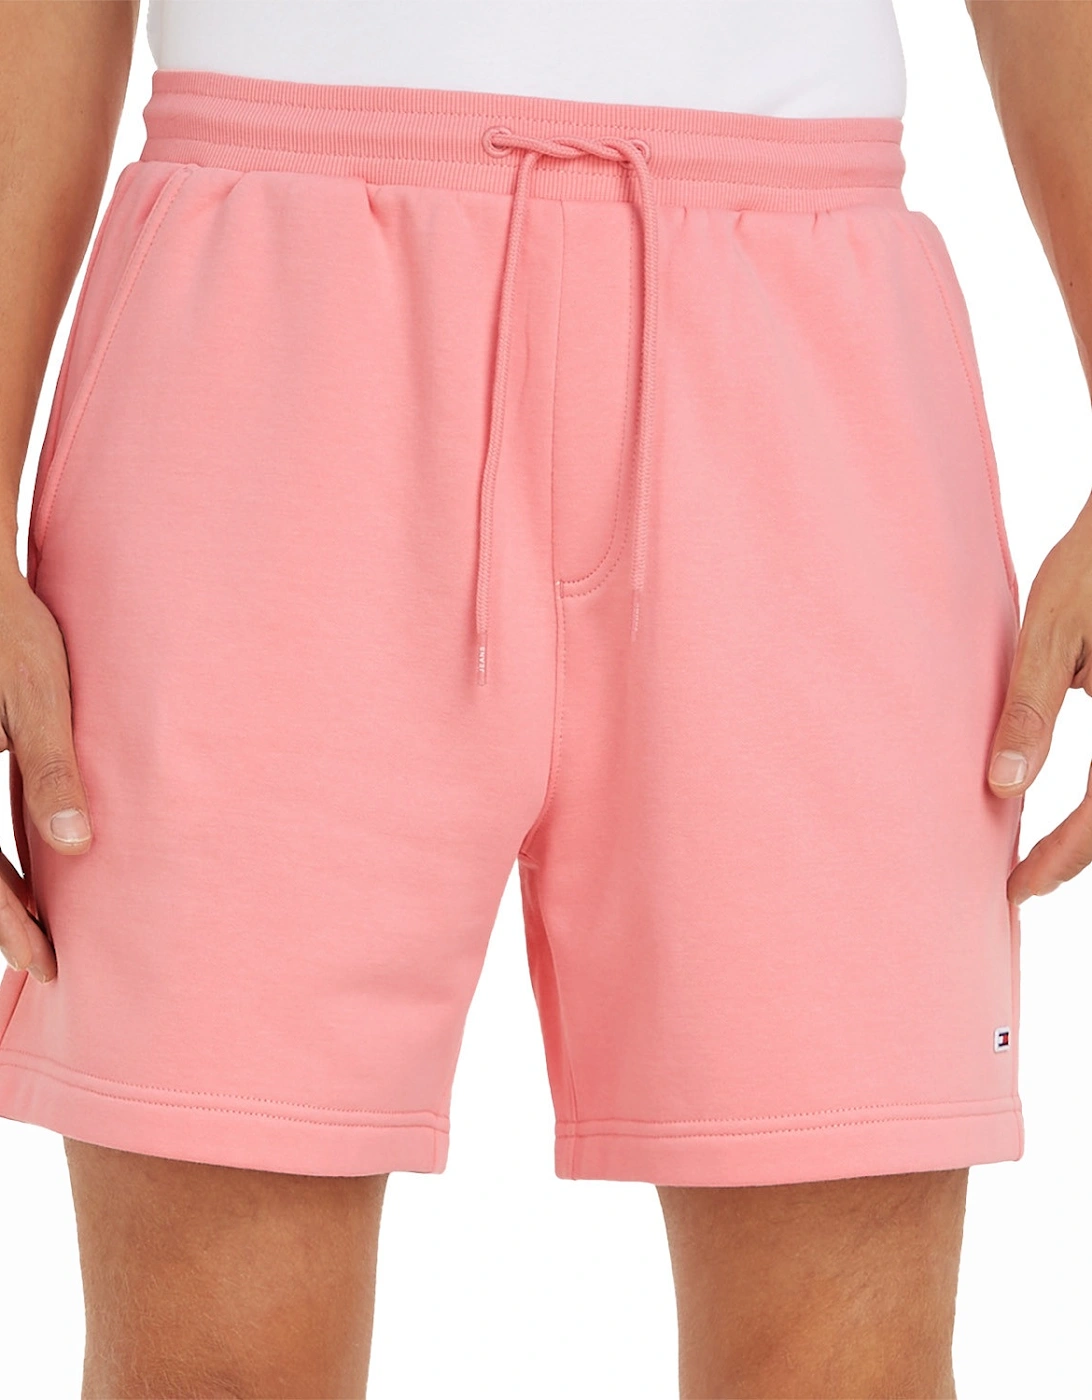 Mens Beach Fleece Shorts (Pink)